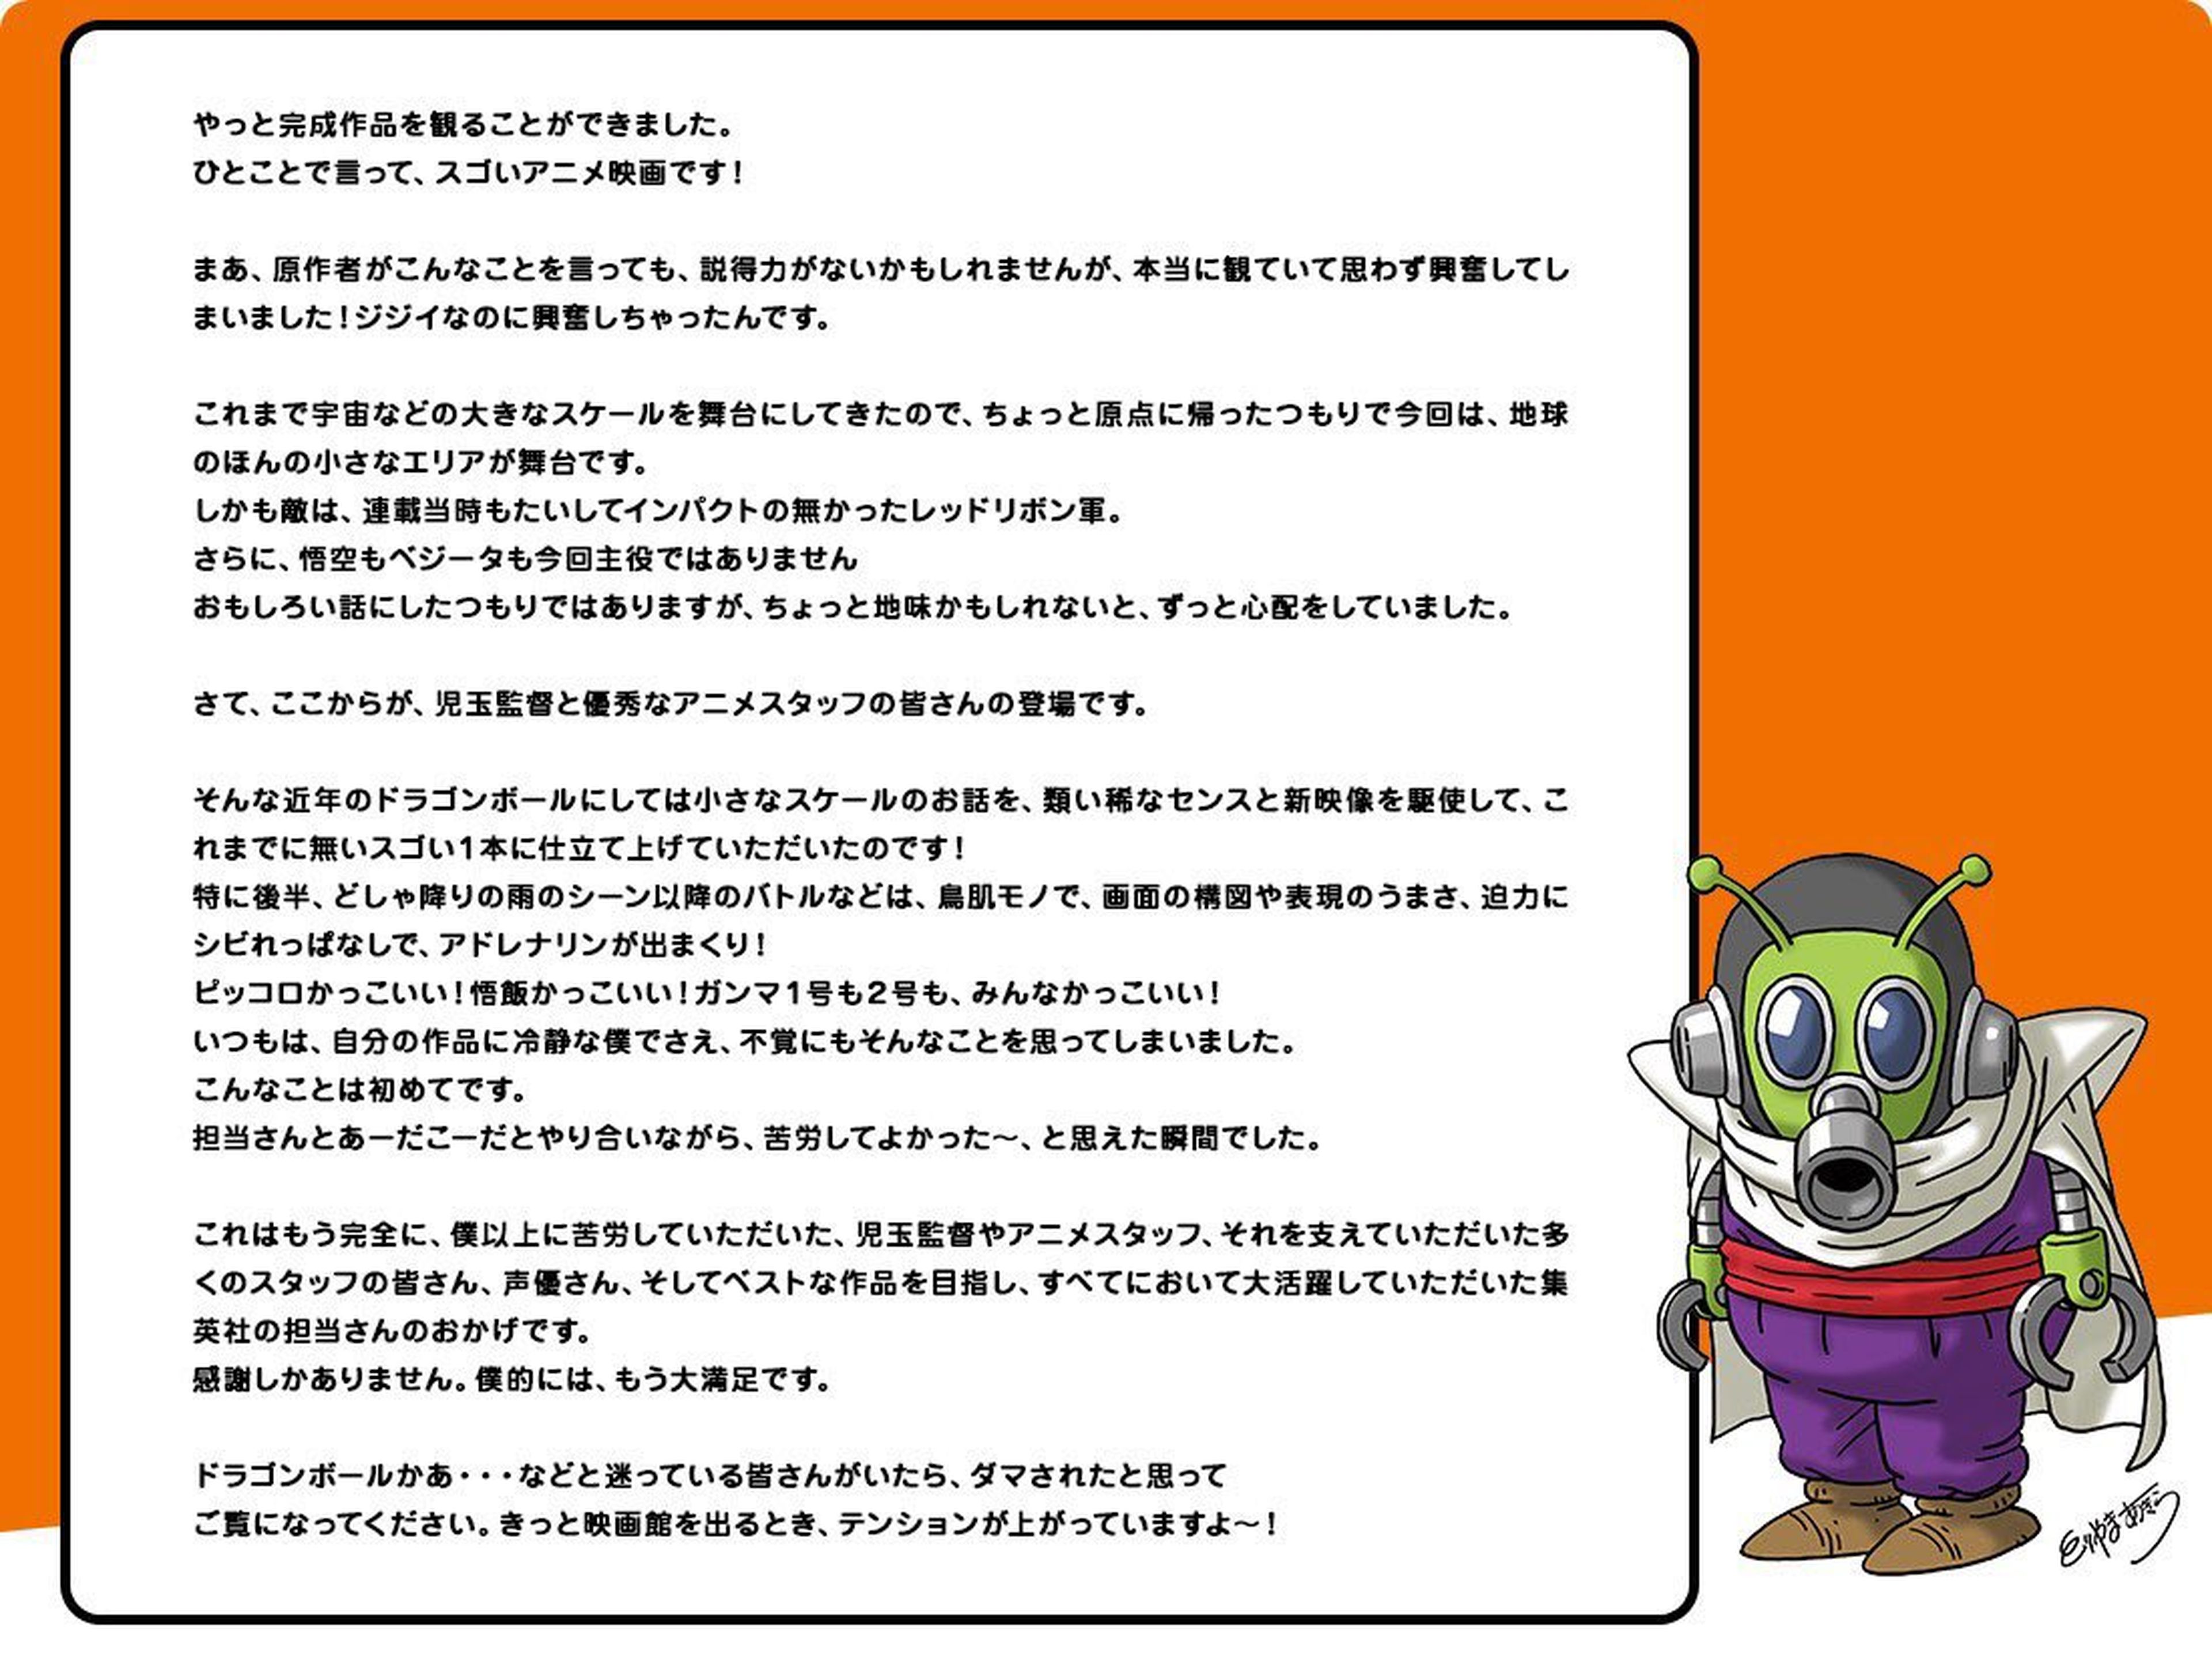 Dragon Ball Super: Super Hero - Nuevo mensaje de Akira Toriyama tras haber visto la película. ¡Nunca le había pasado algo así!